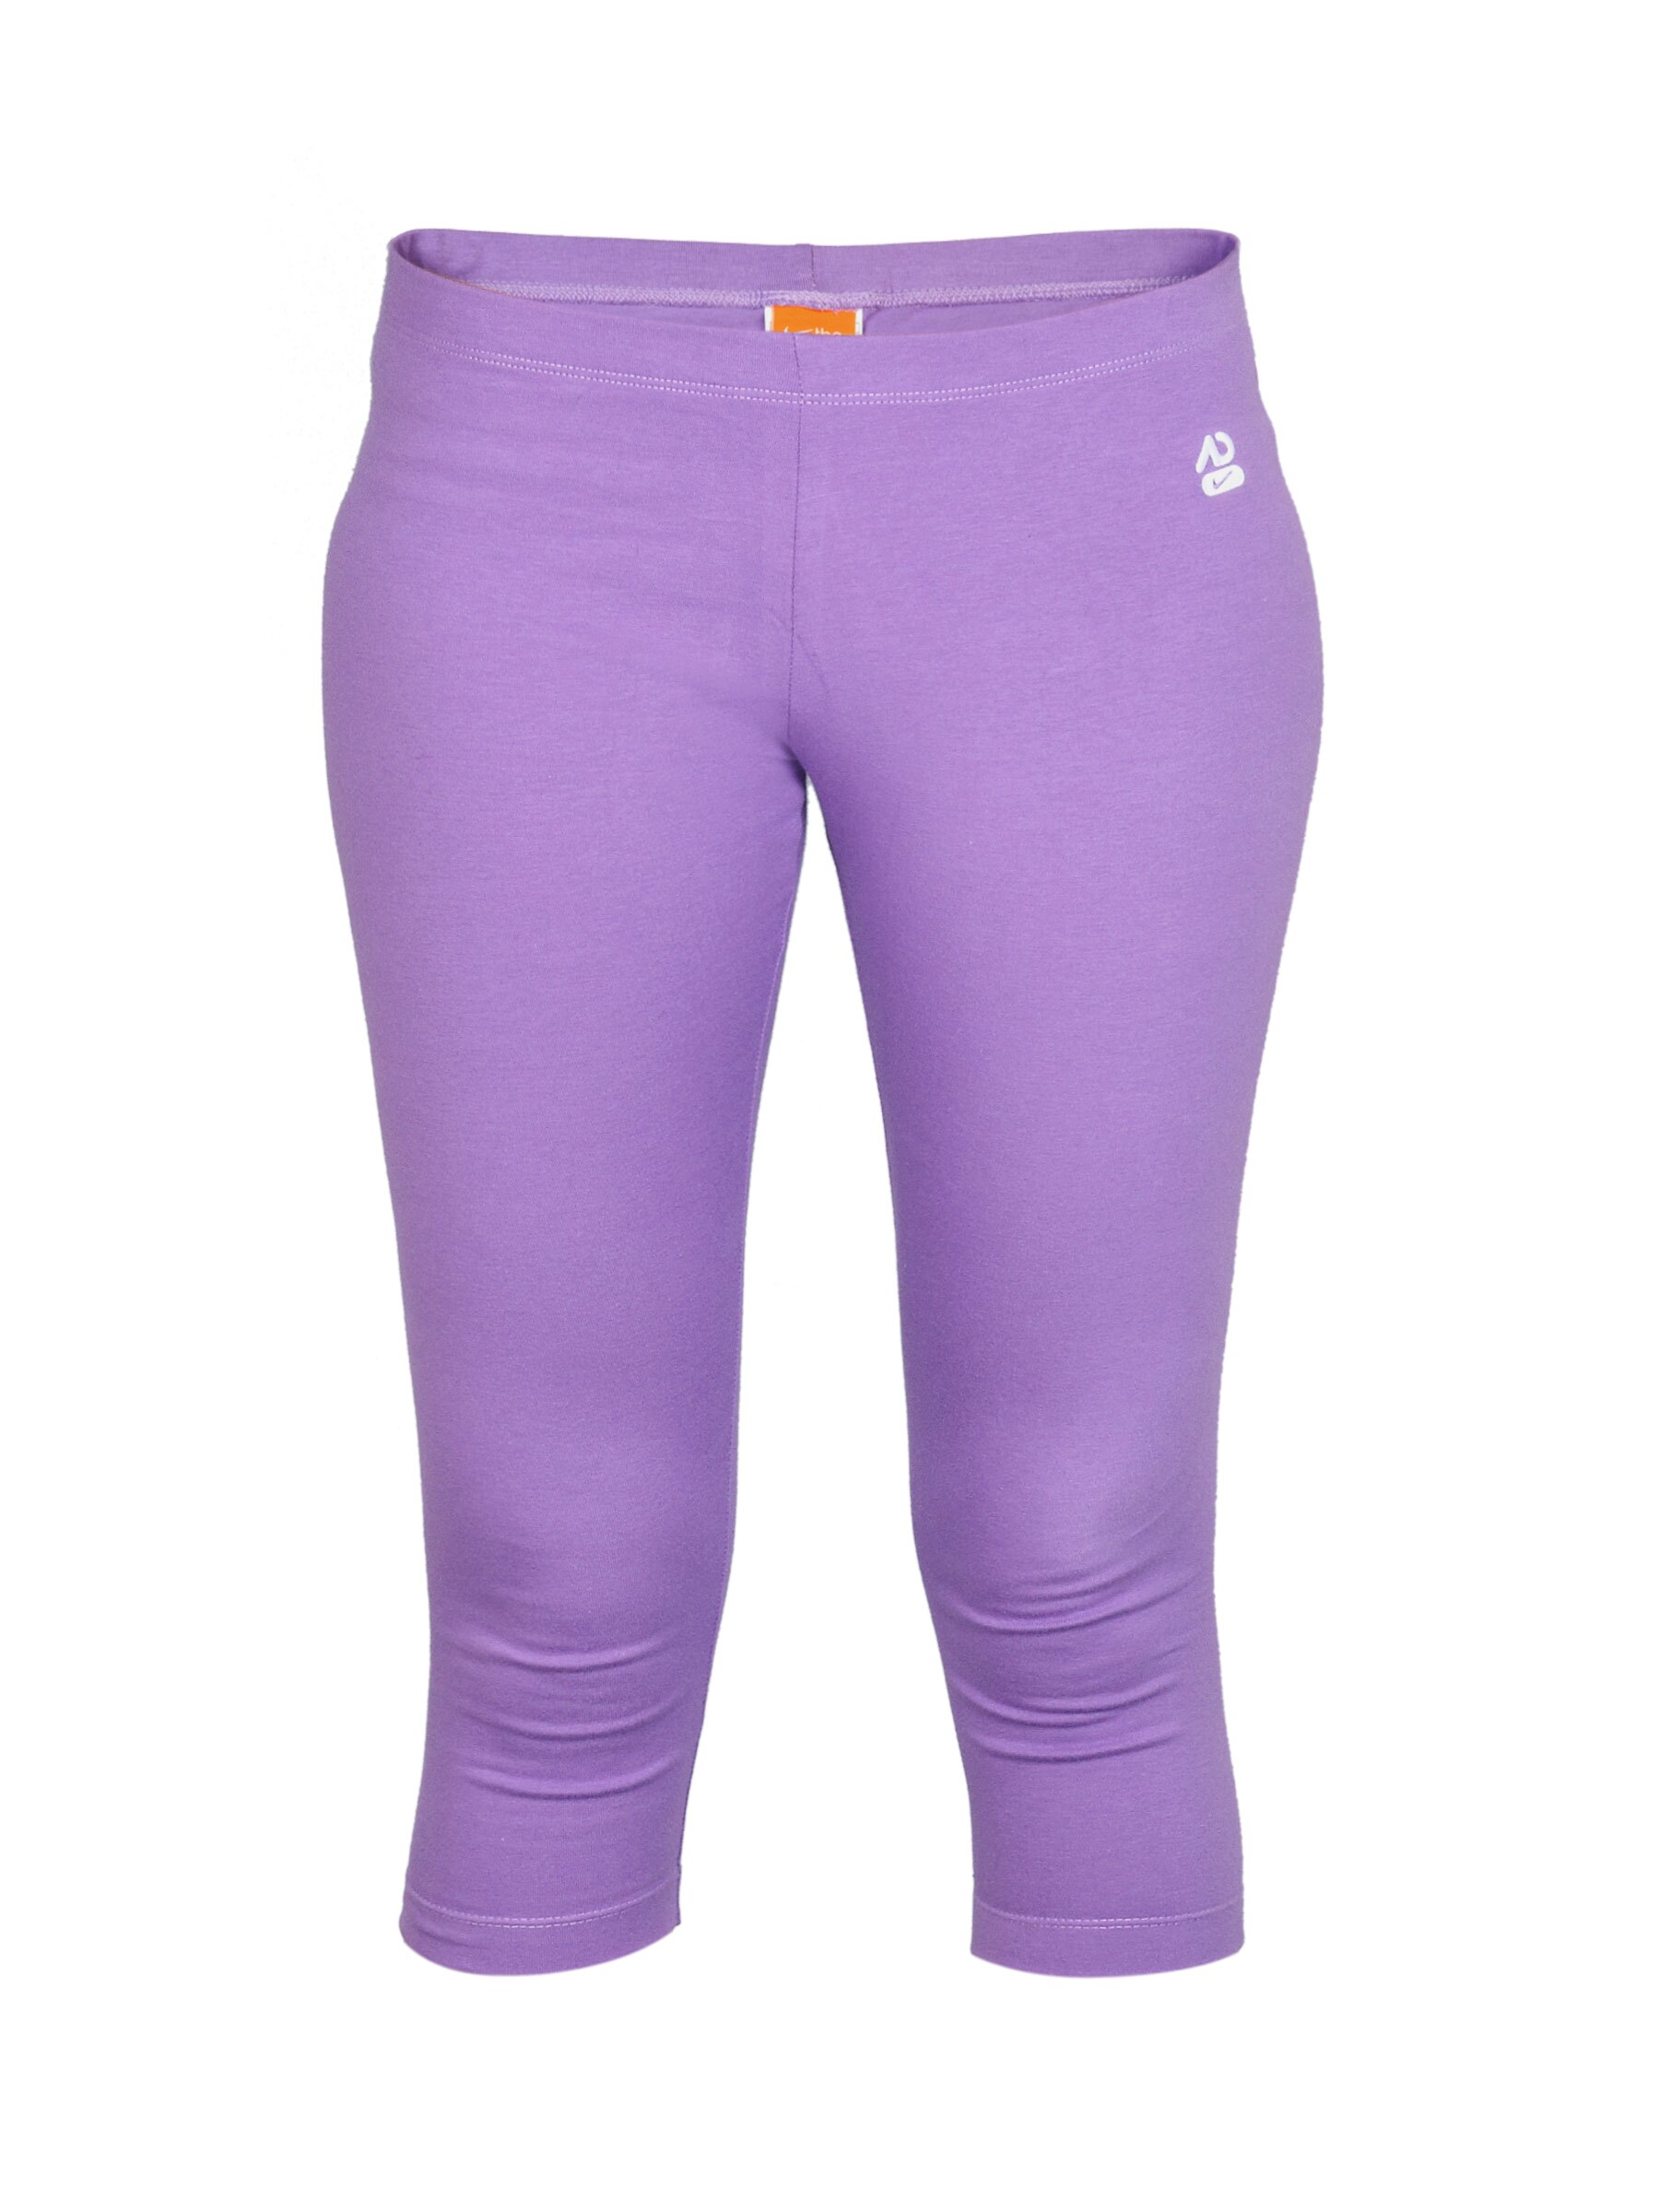 Nike Women Squad Purple Capri